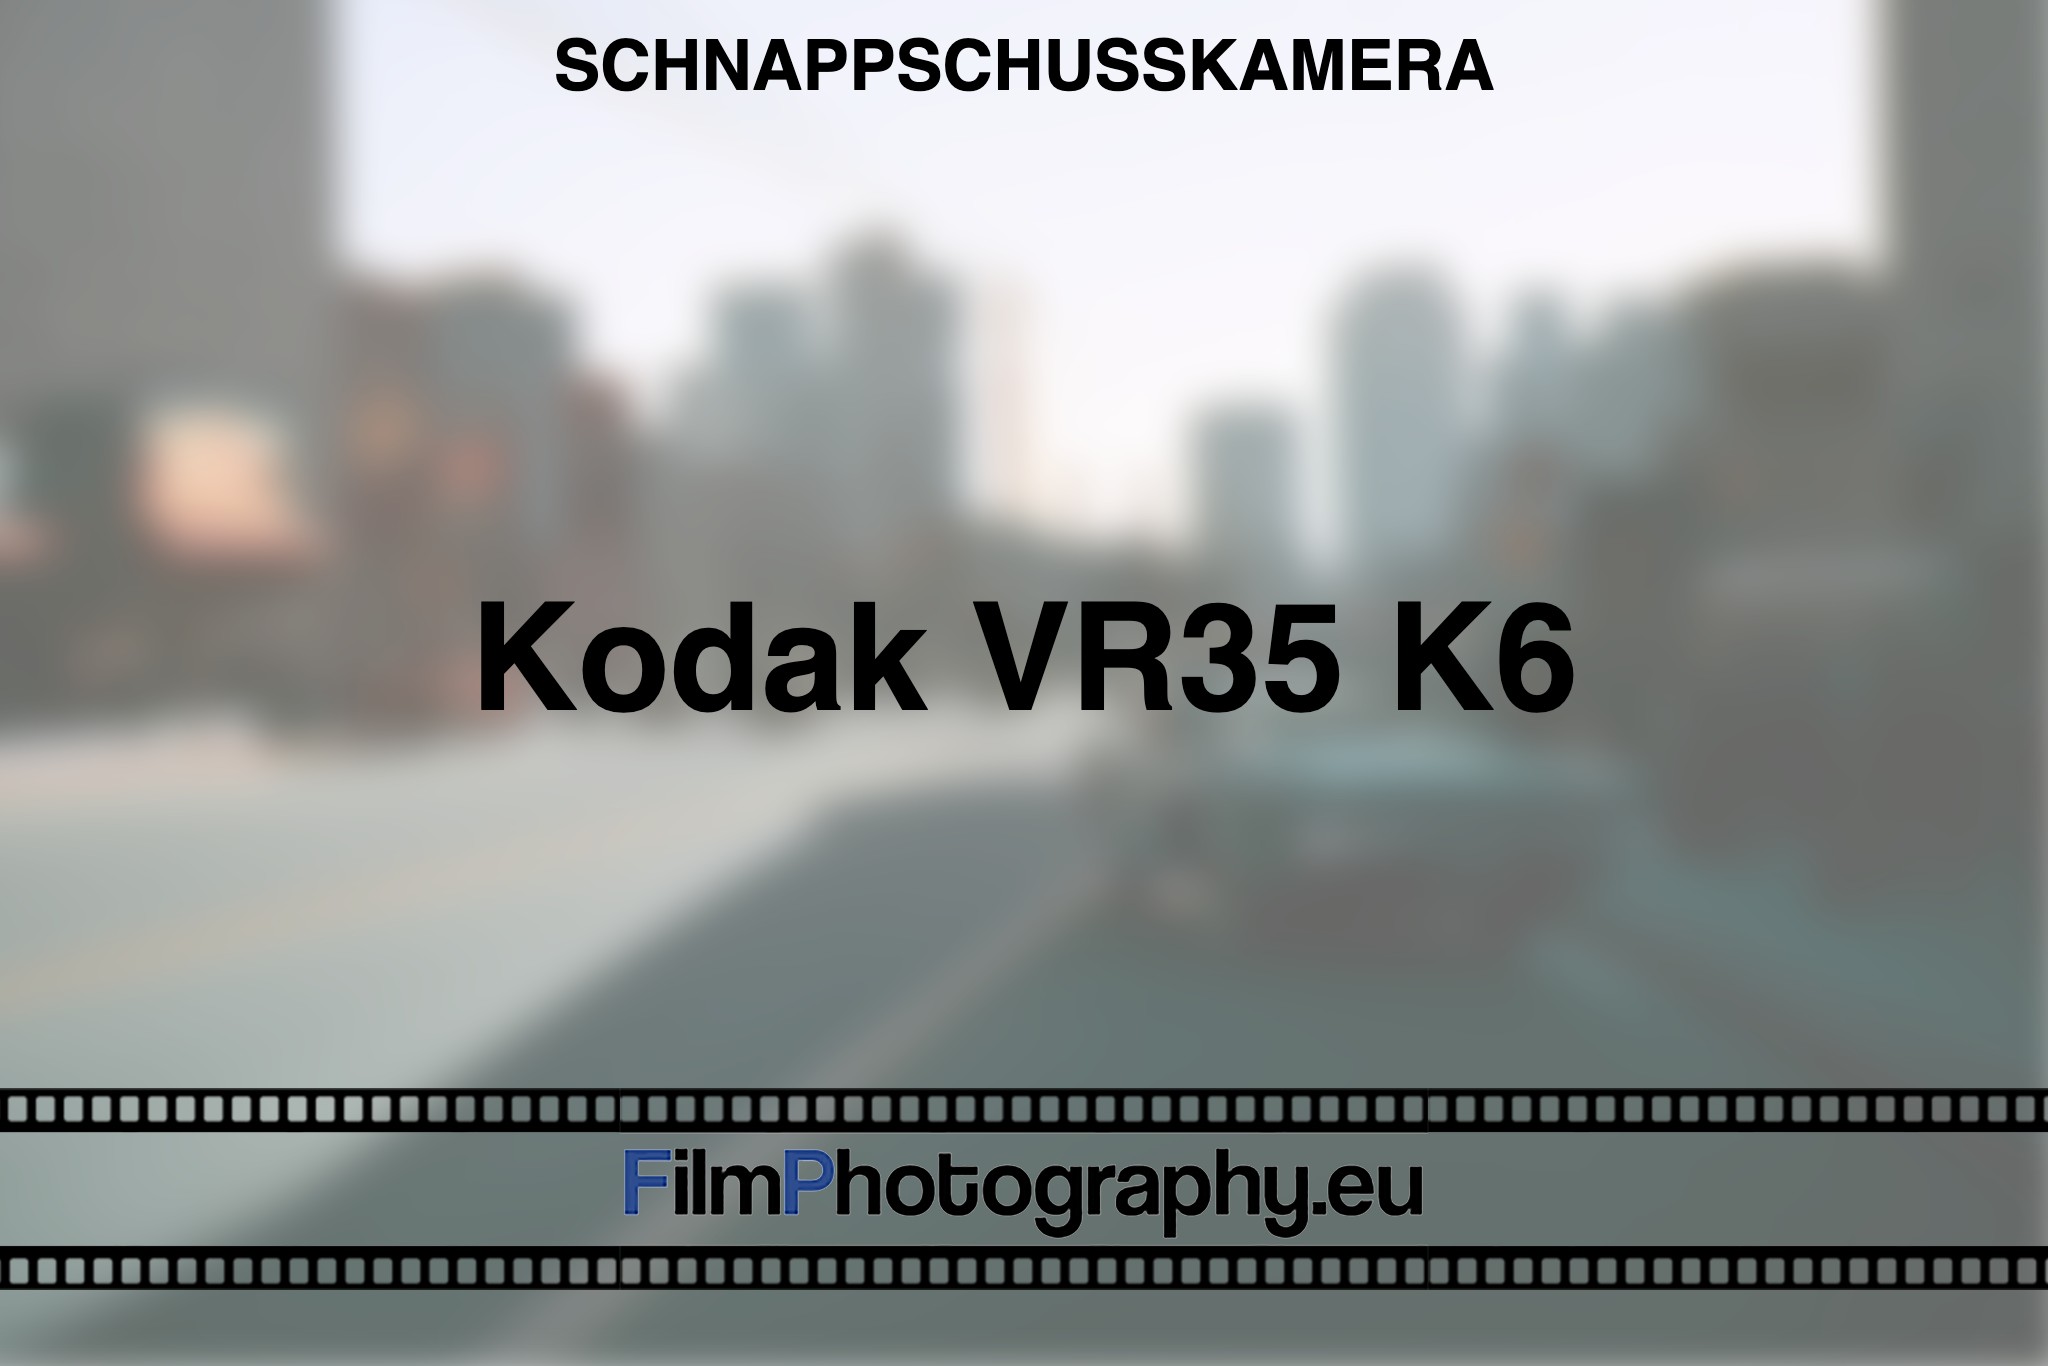 kodak-vr35-k6-schnappschusskamera-bnv